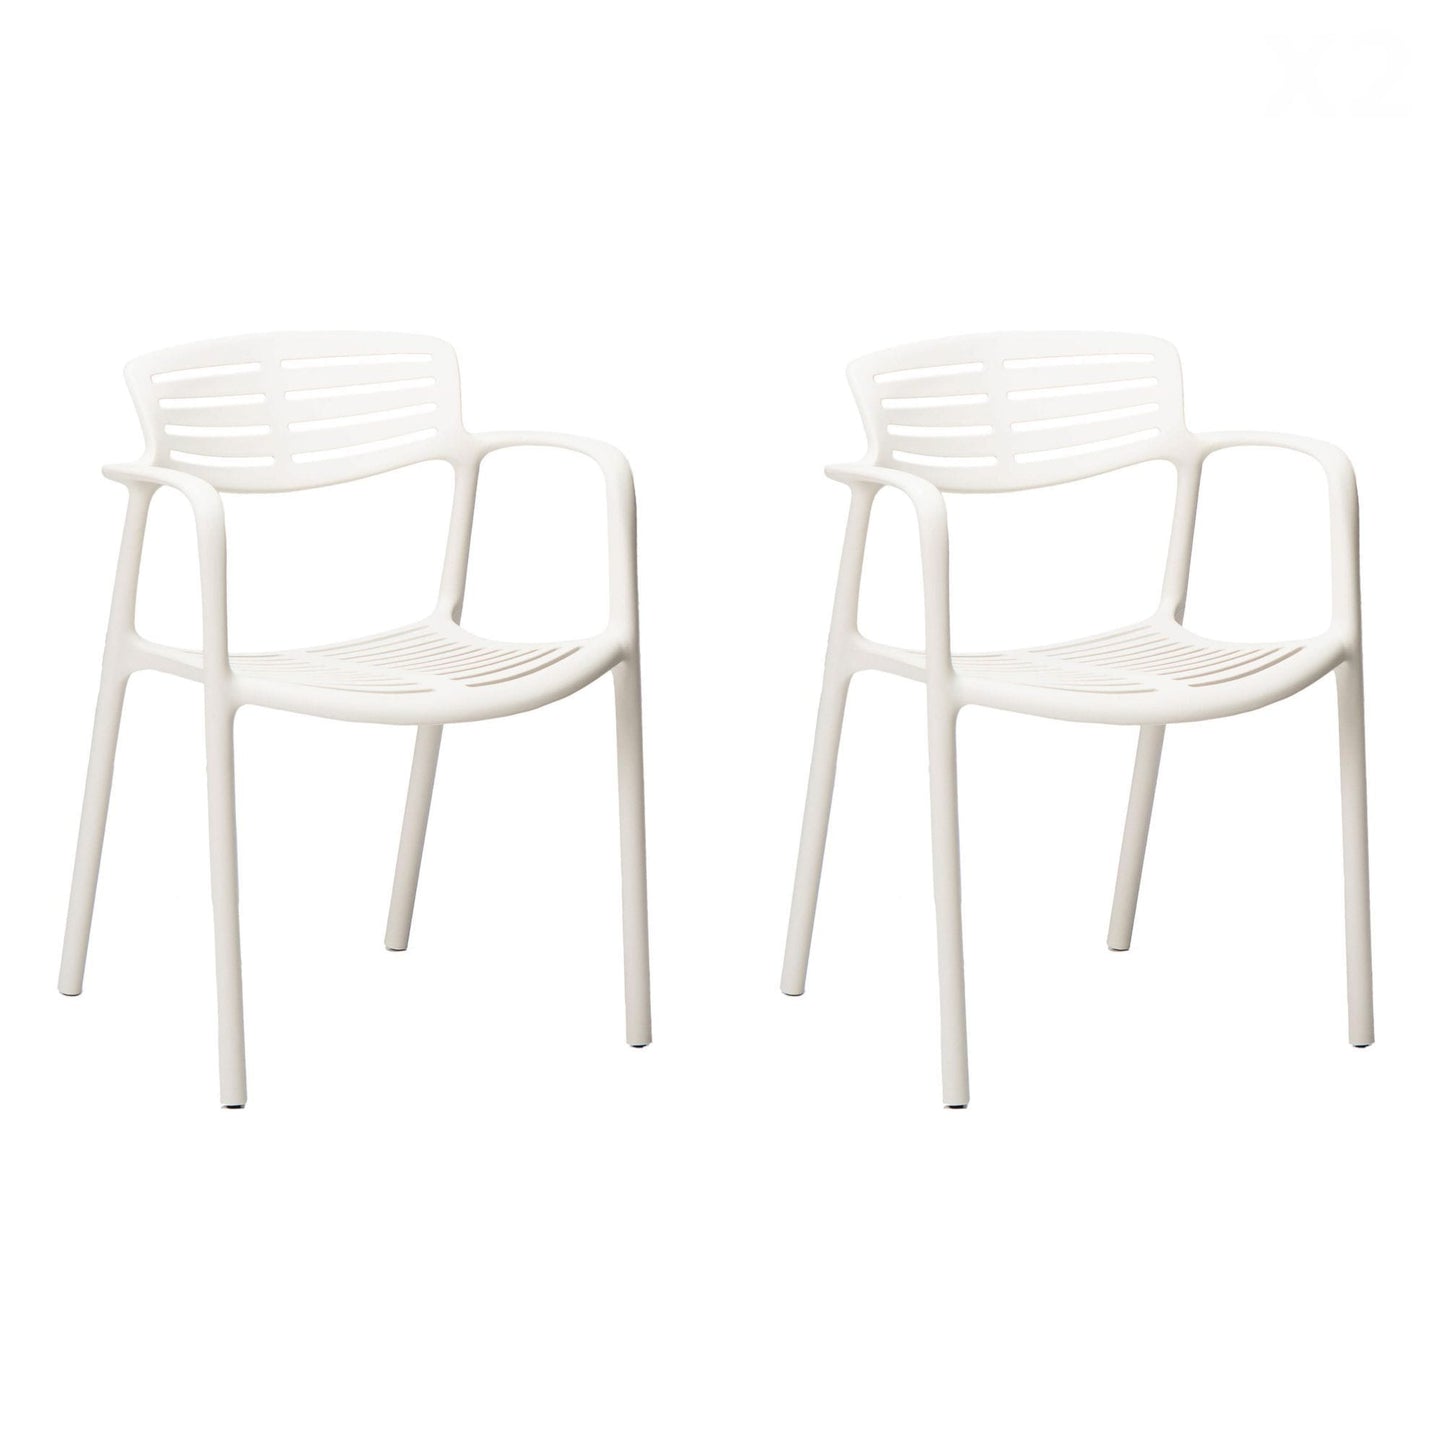 Resol toledo aire set 2 silla con brazos interior, exterior blanco